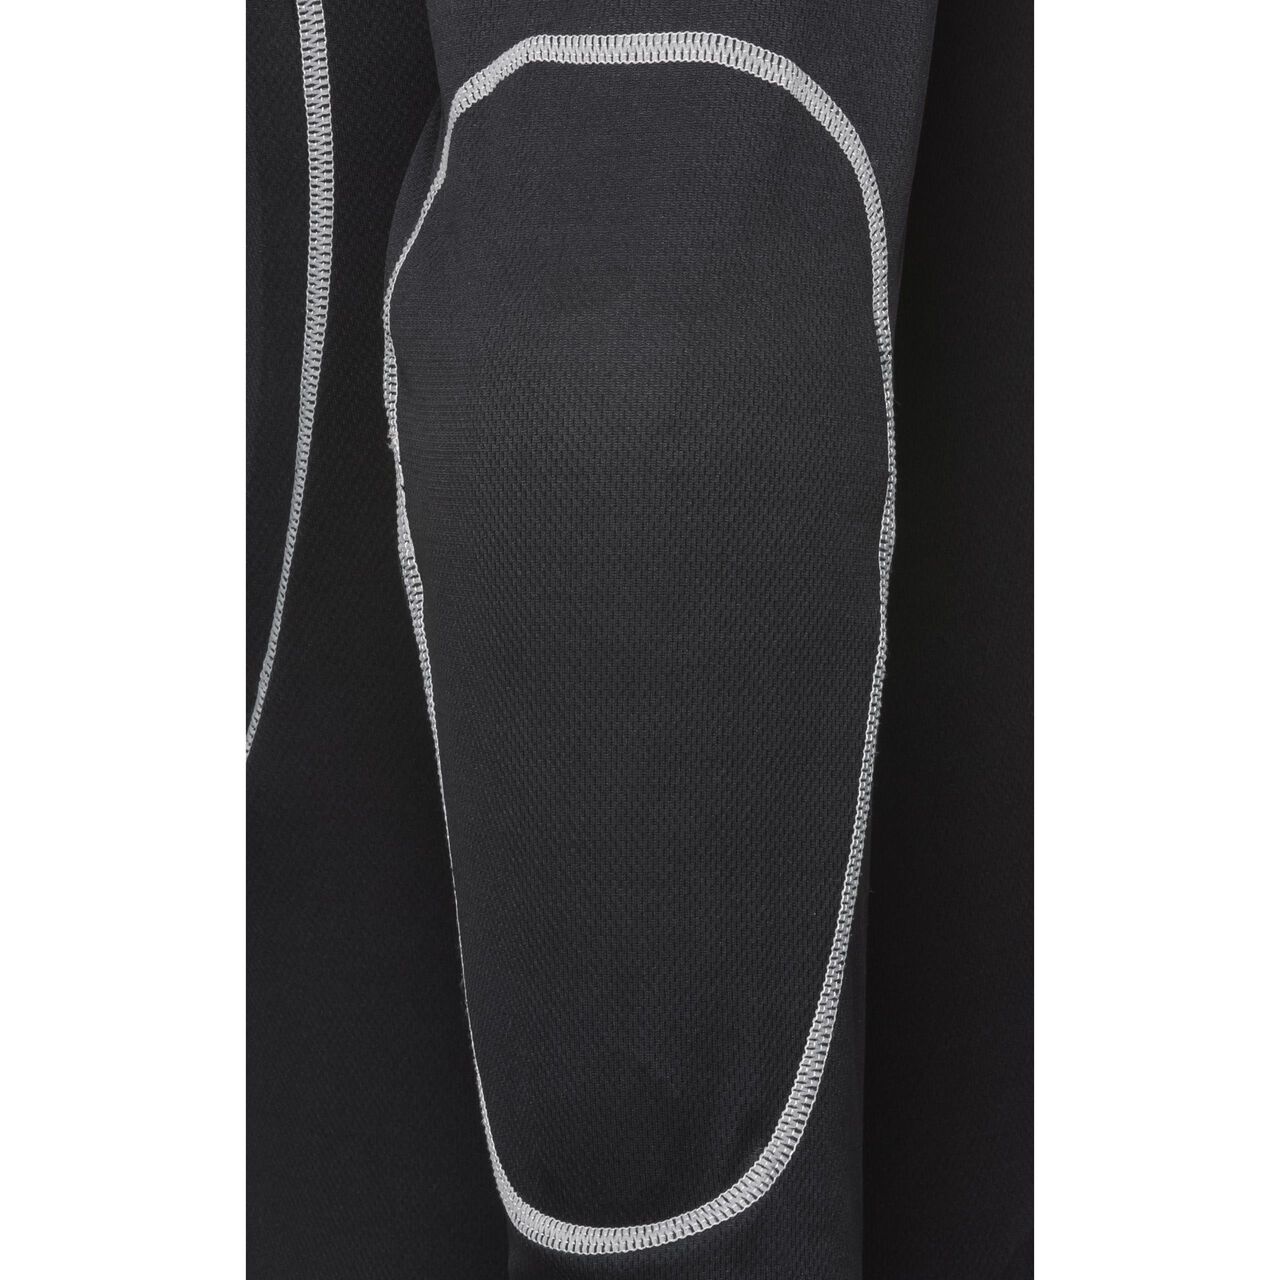 Sous-veste avec protections d’articulation 3.0 noir